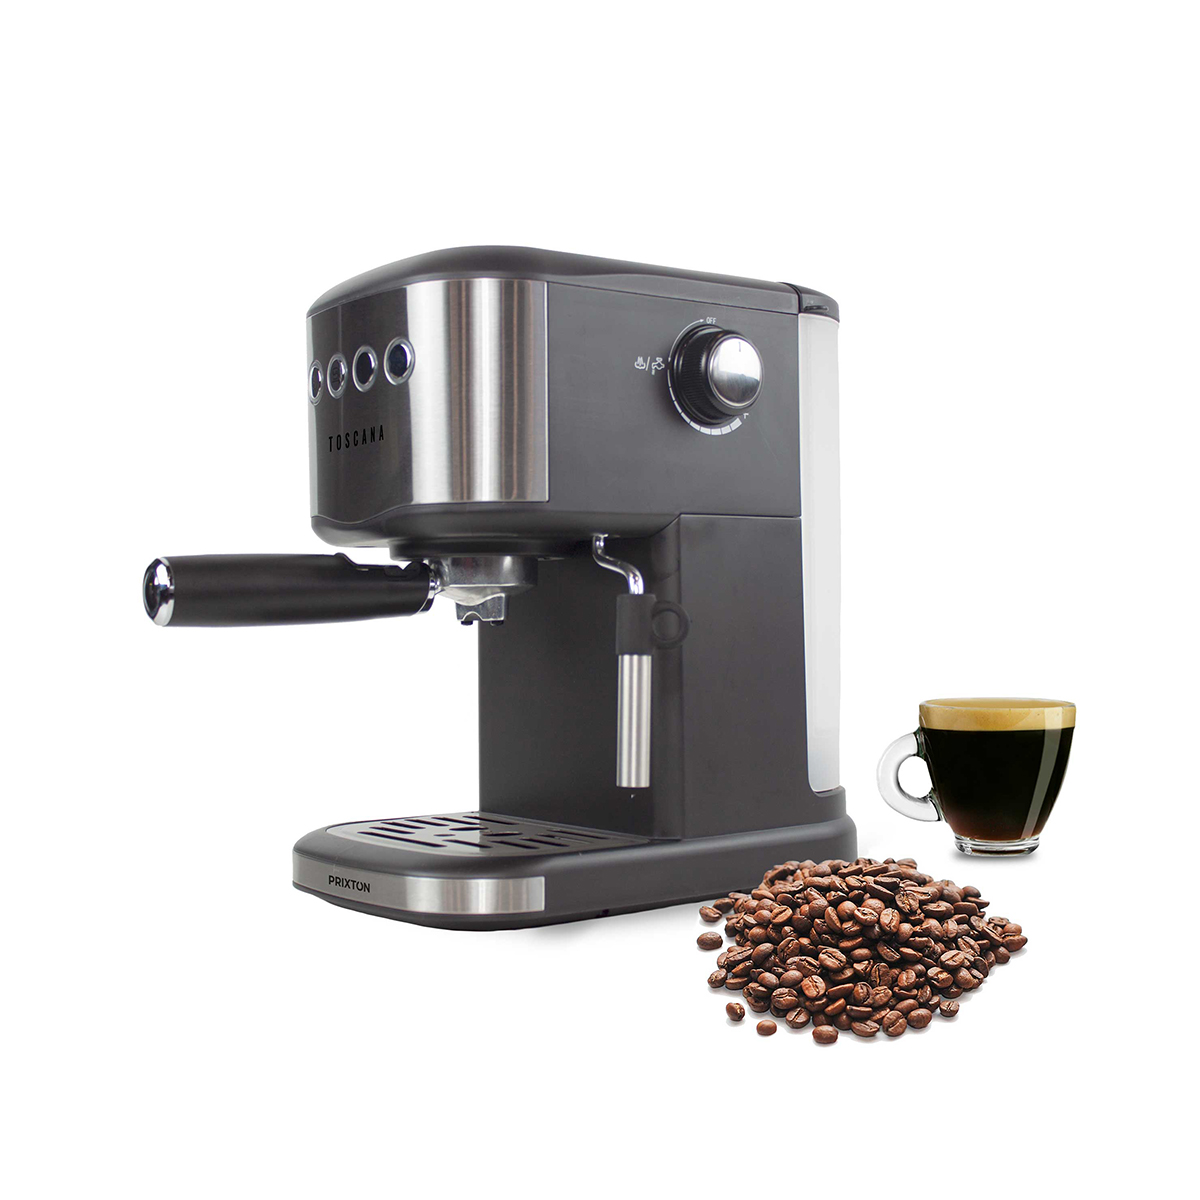 Automatic Espresso Machine Toscana - PRIXTON